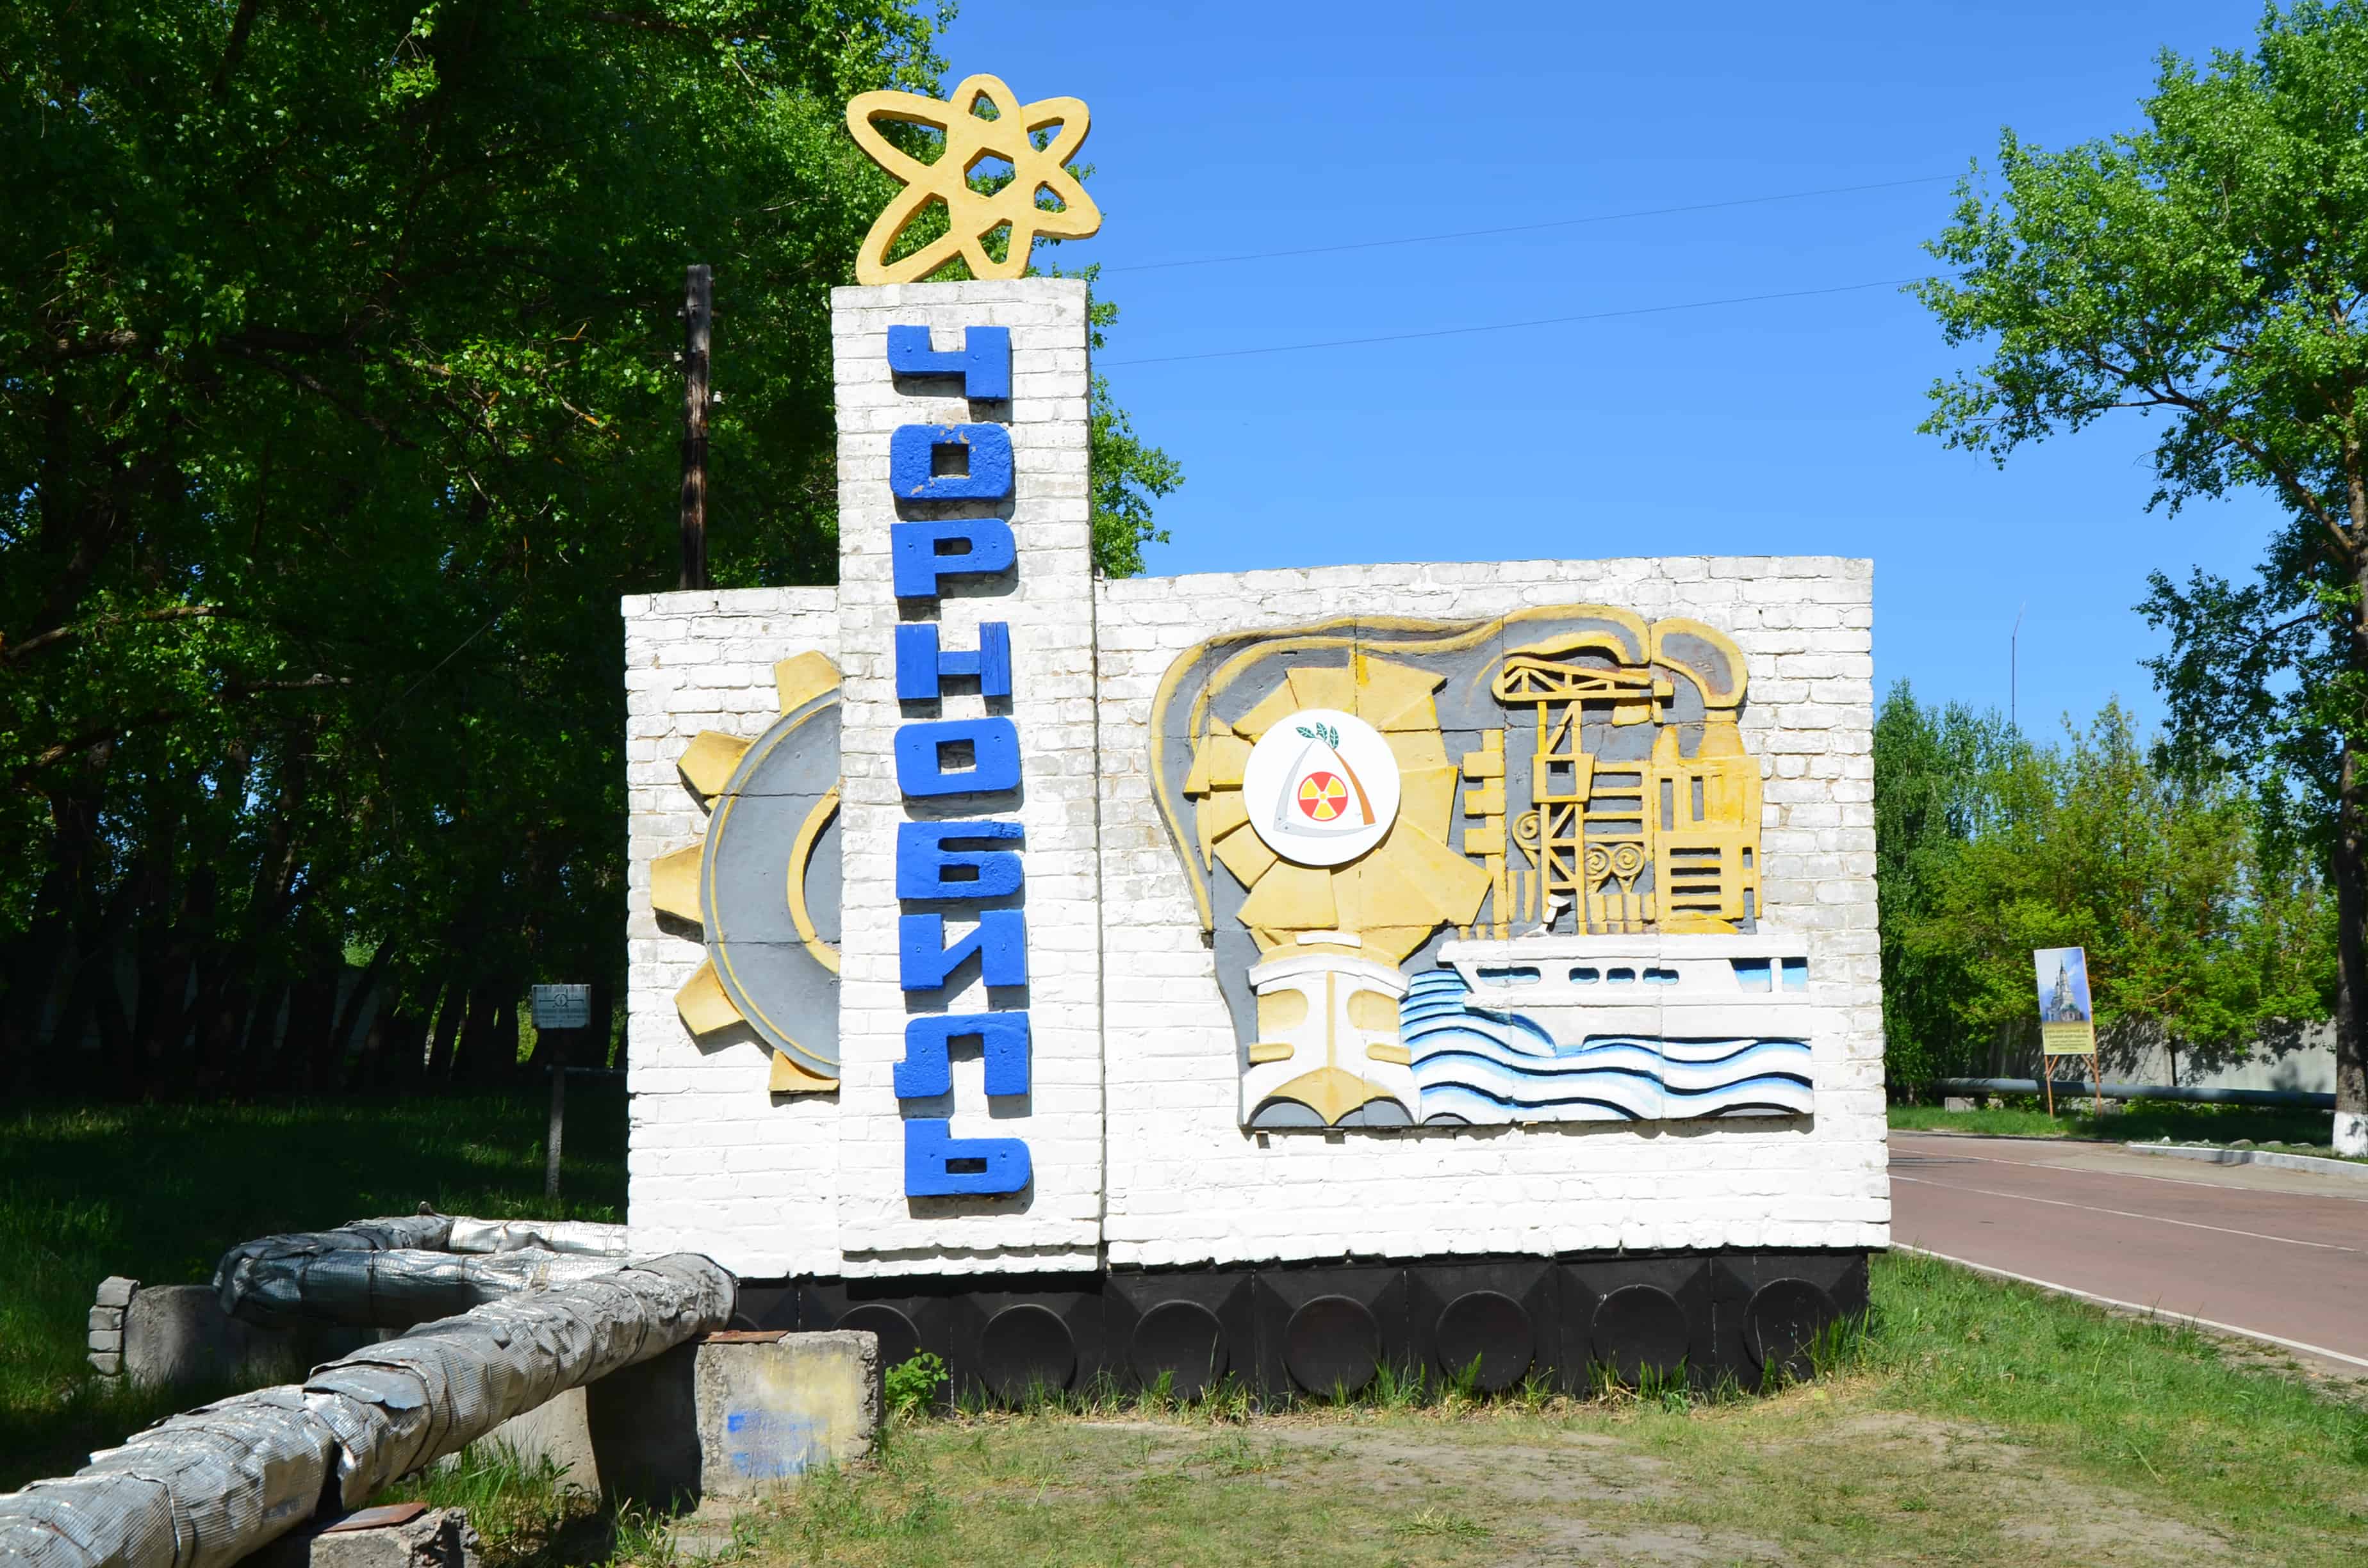 Chernobyl sign in Chernobyl, Chernobyl Exclusion Zone, Ukraine